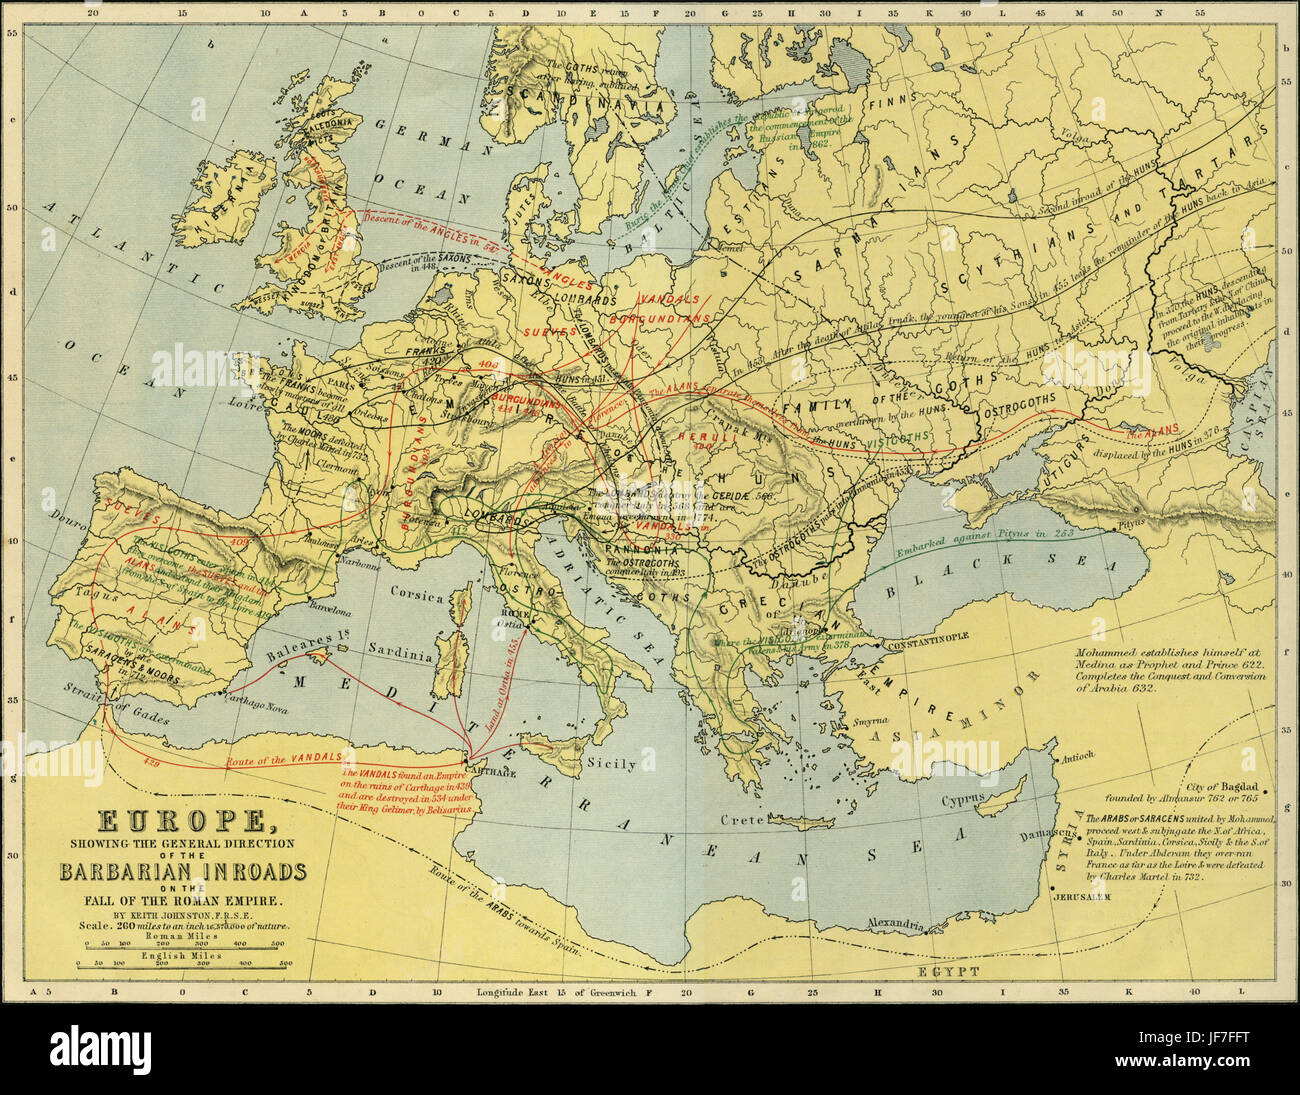 Karte von Europa mit barbarischen Überfälle auf den Niedergang des römischen Reiches. Gezeichnet von Keith Johnston F.R.S.E. veröffentlicht in der unvergleichlichen klassische Atlas von W. und a.k. Johnston im Jahr 1877. Stockfoto